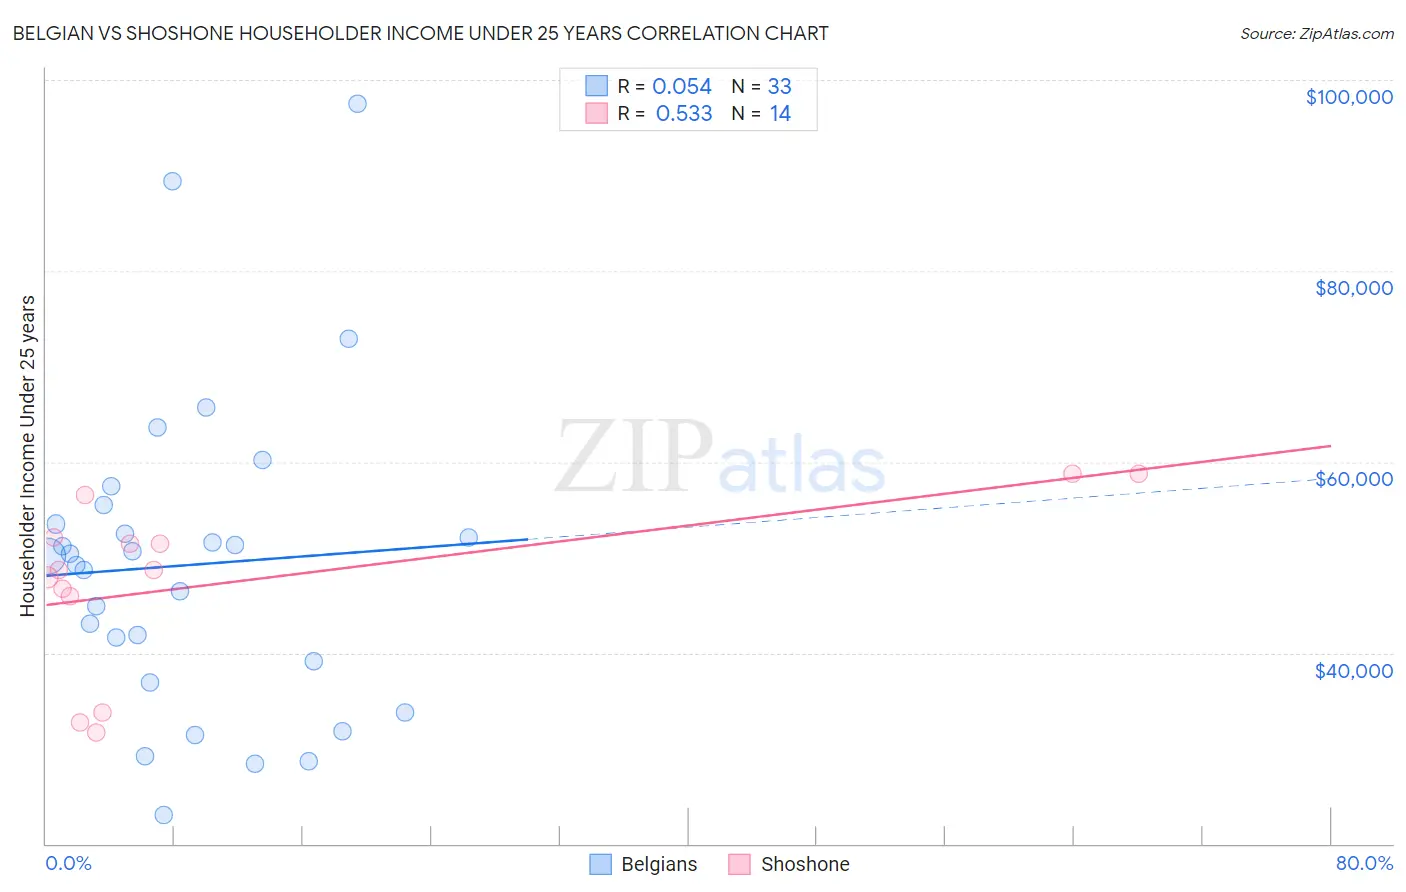 Belgian vs Shoshone Householder Income Under 25 years